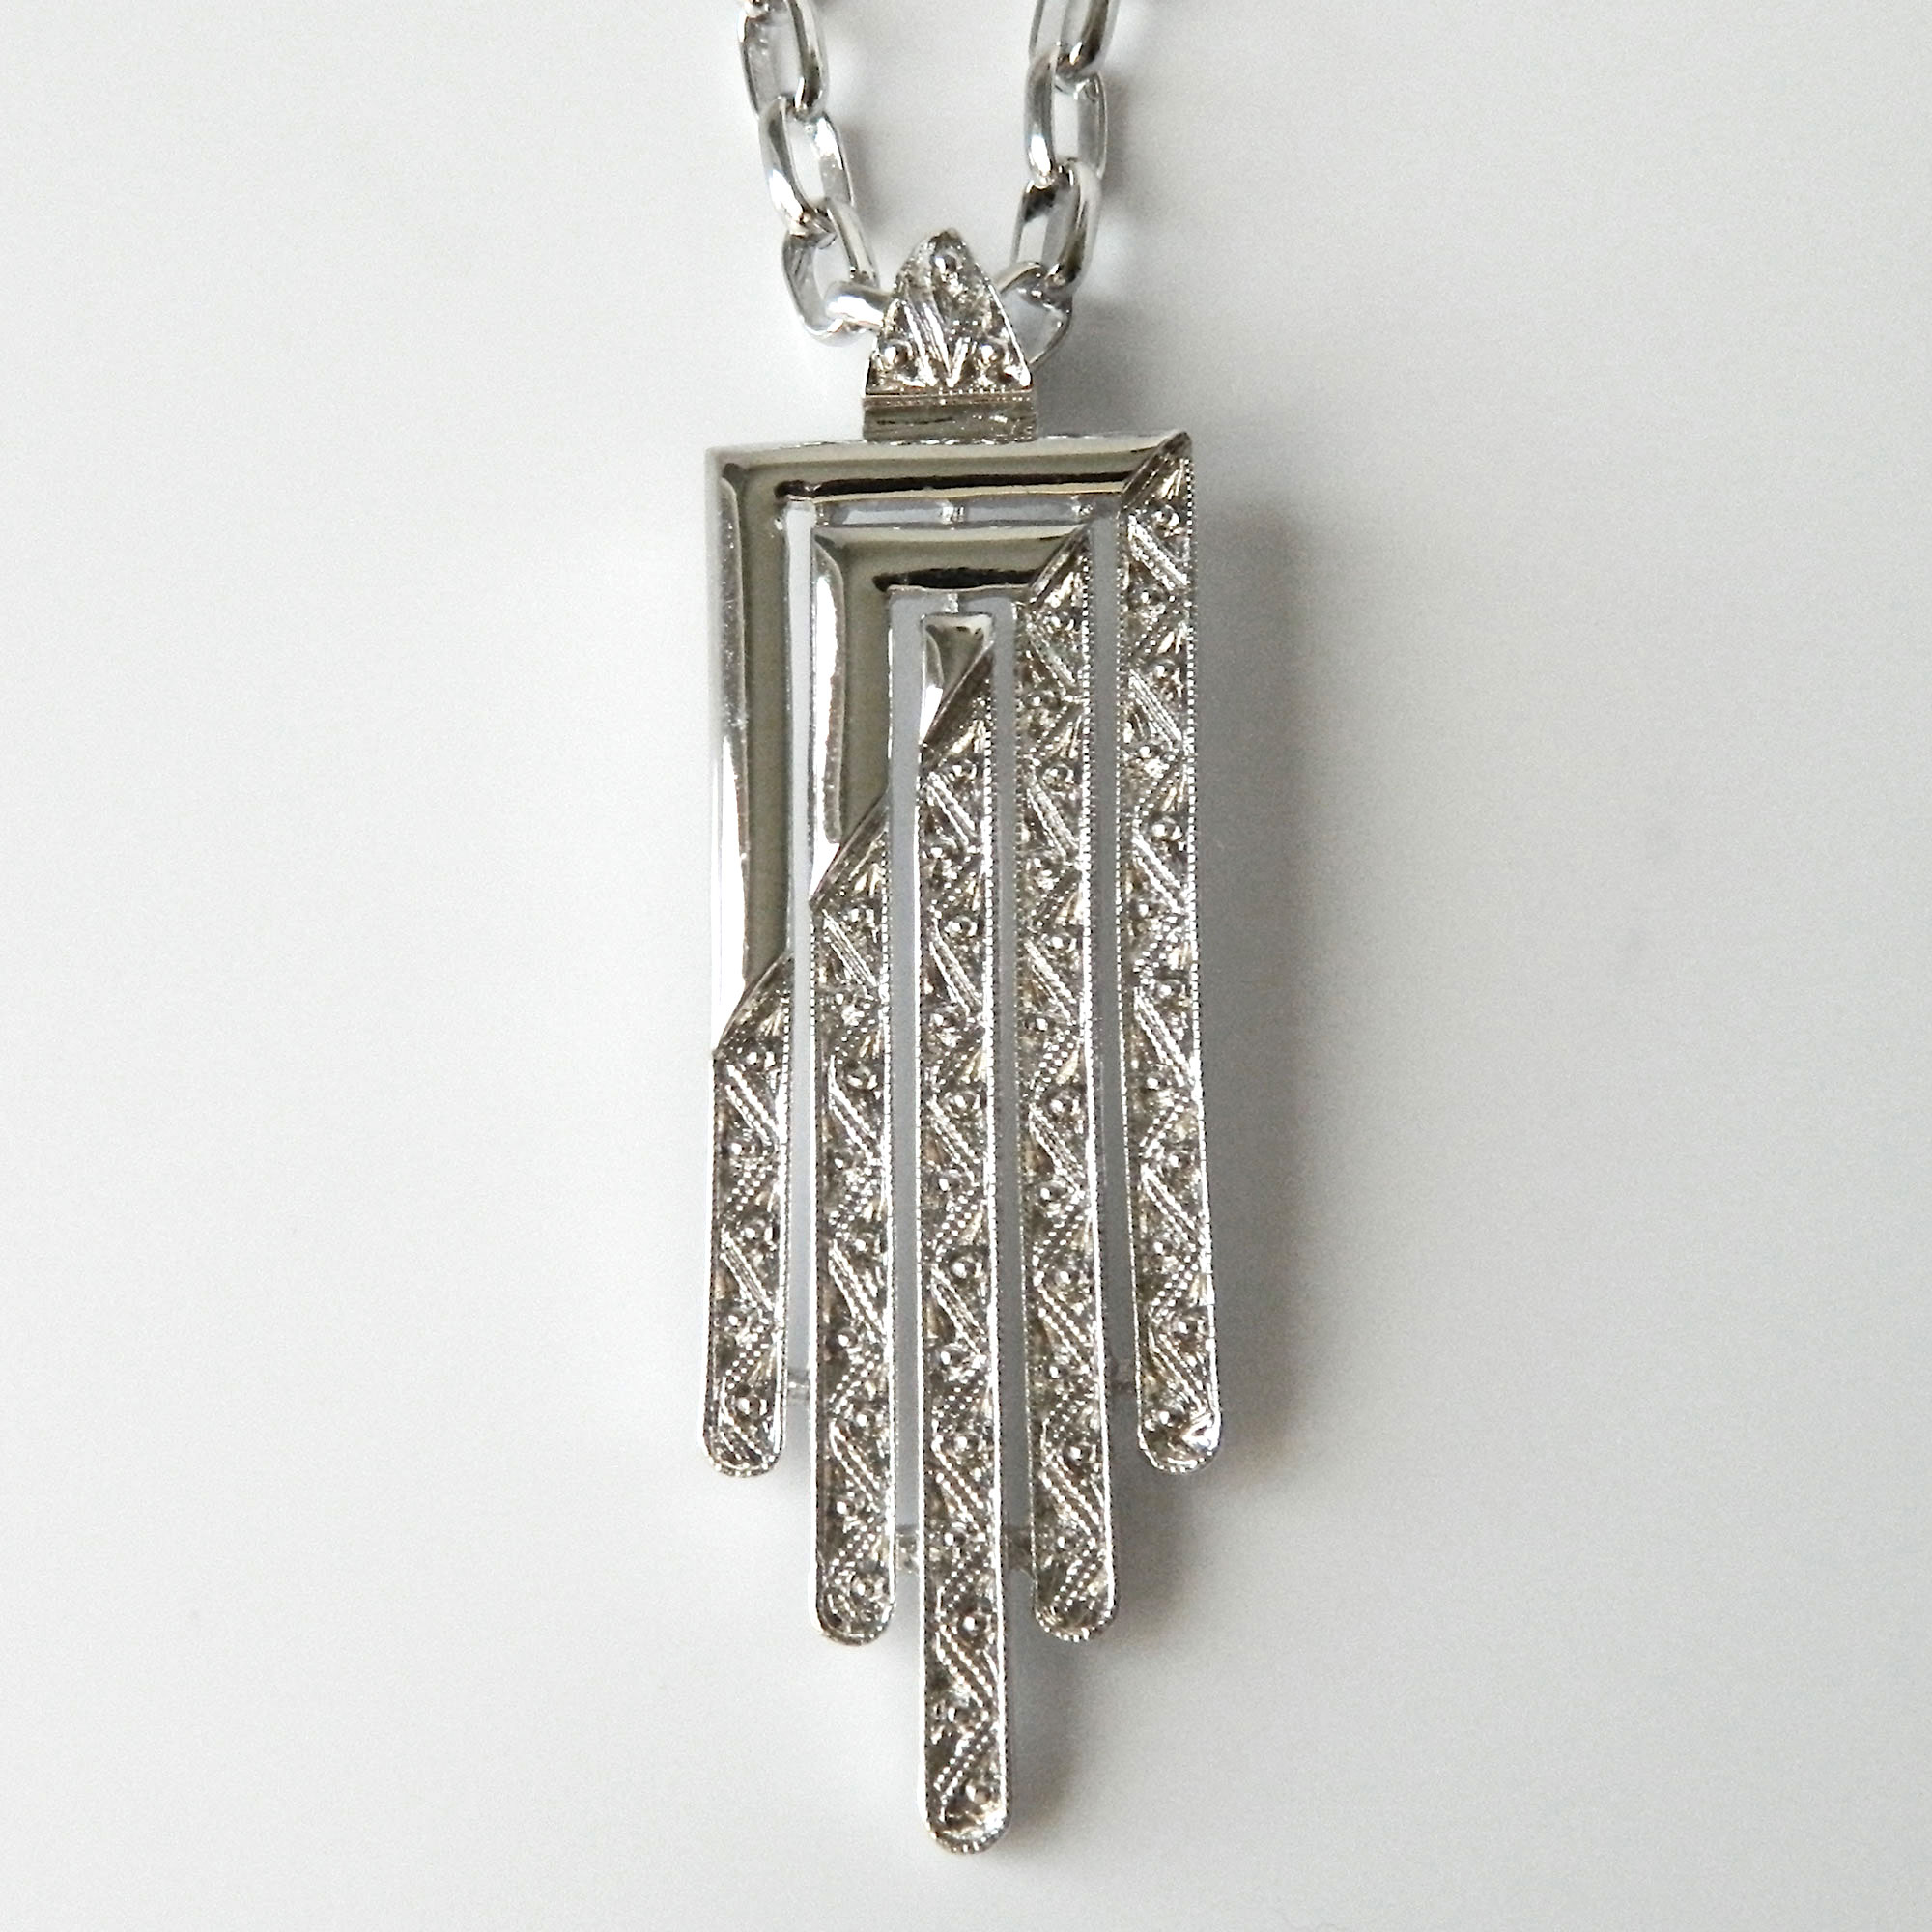 Art Deco pendant necklace by Monet